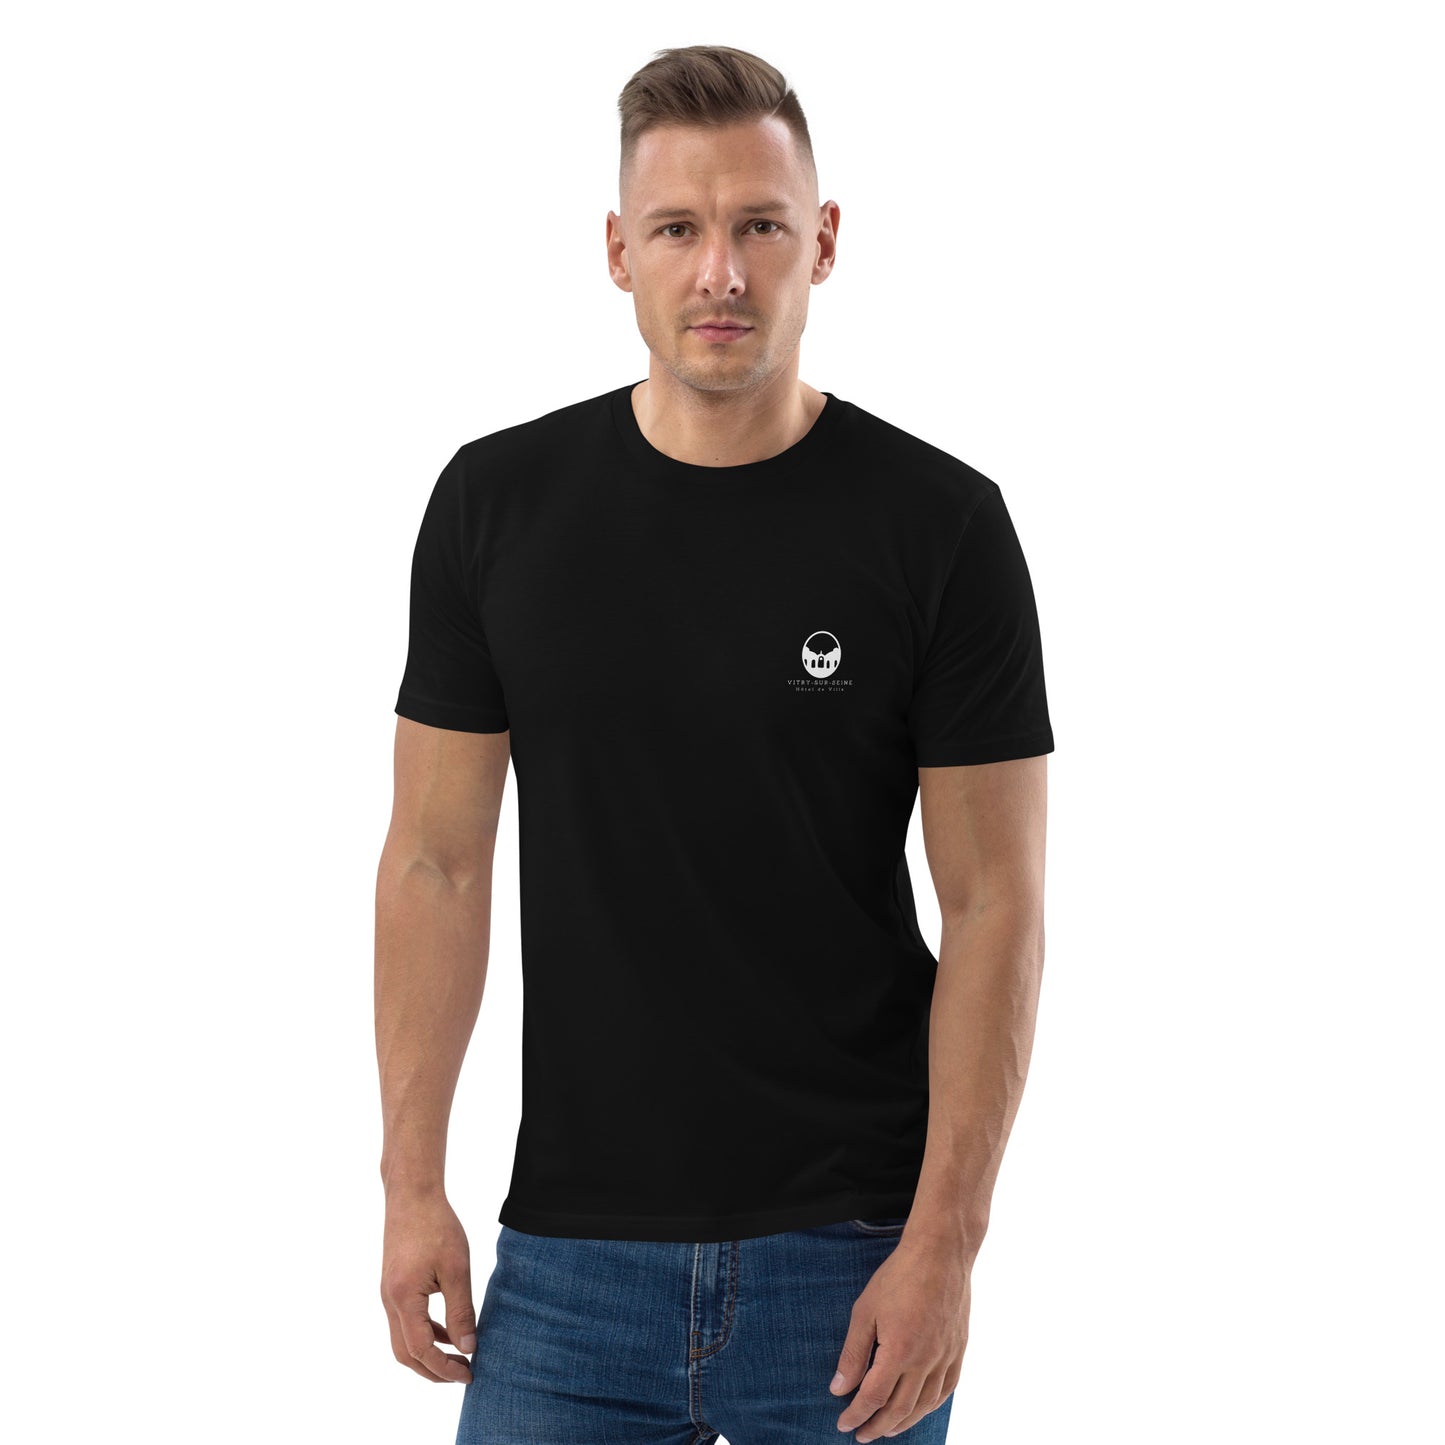 T-shirt Vitry-sur-seine